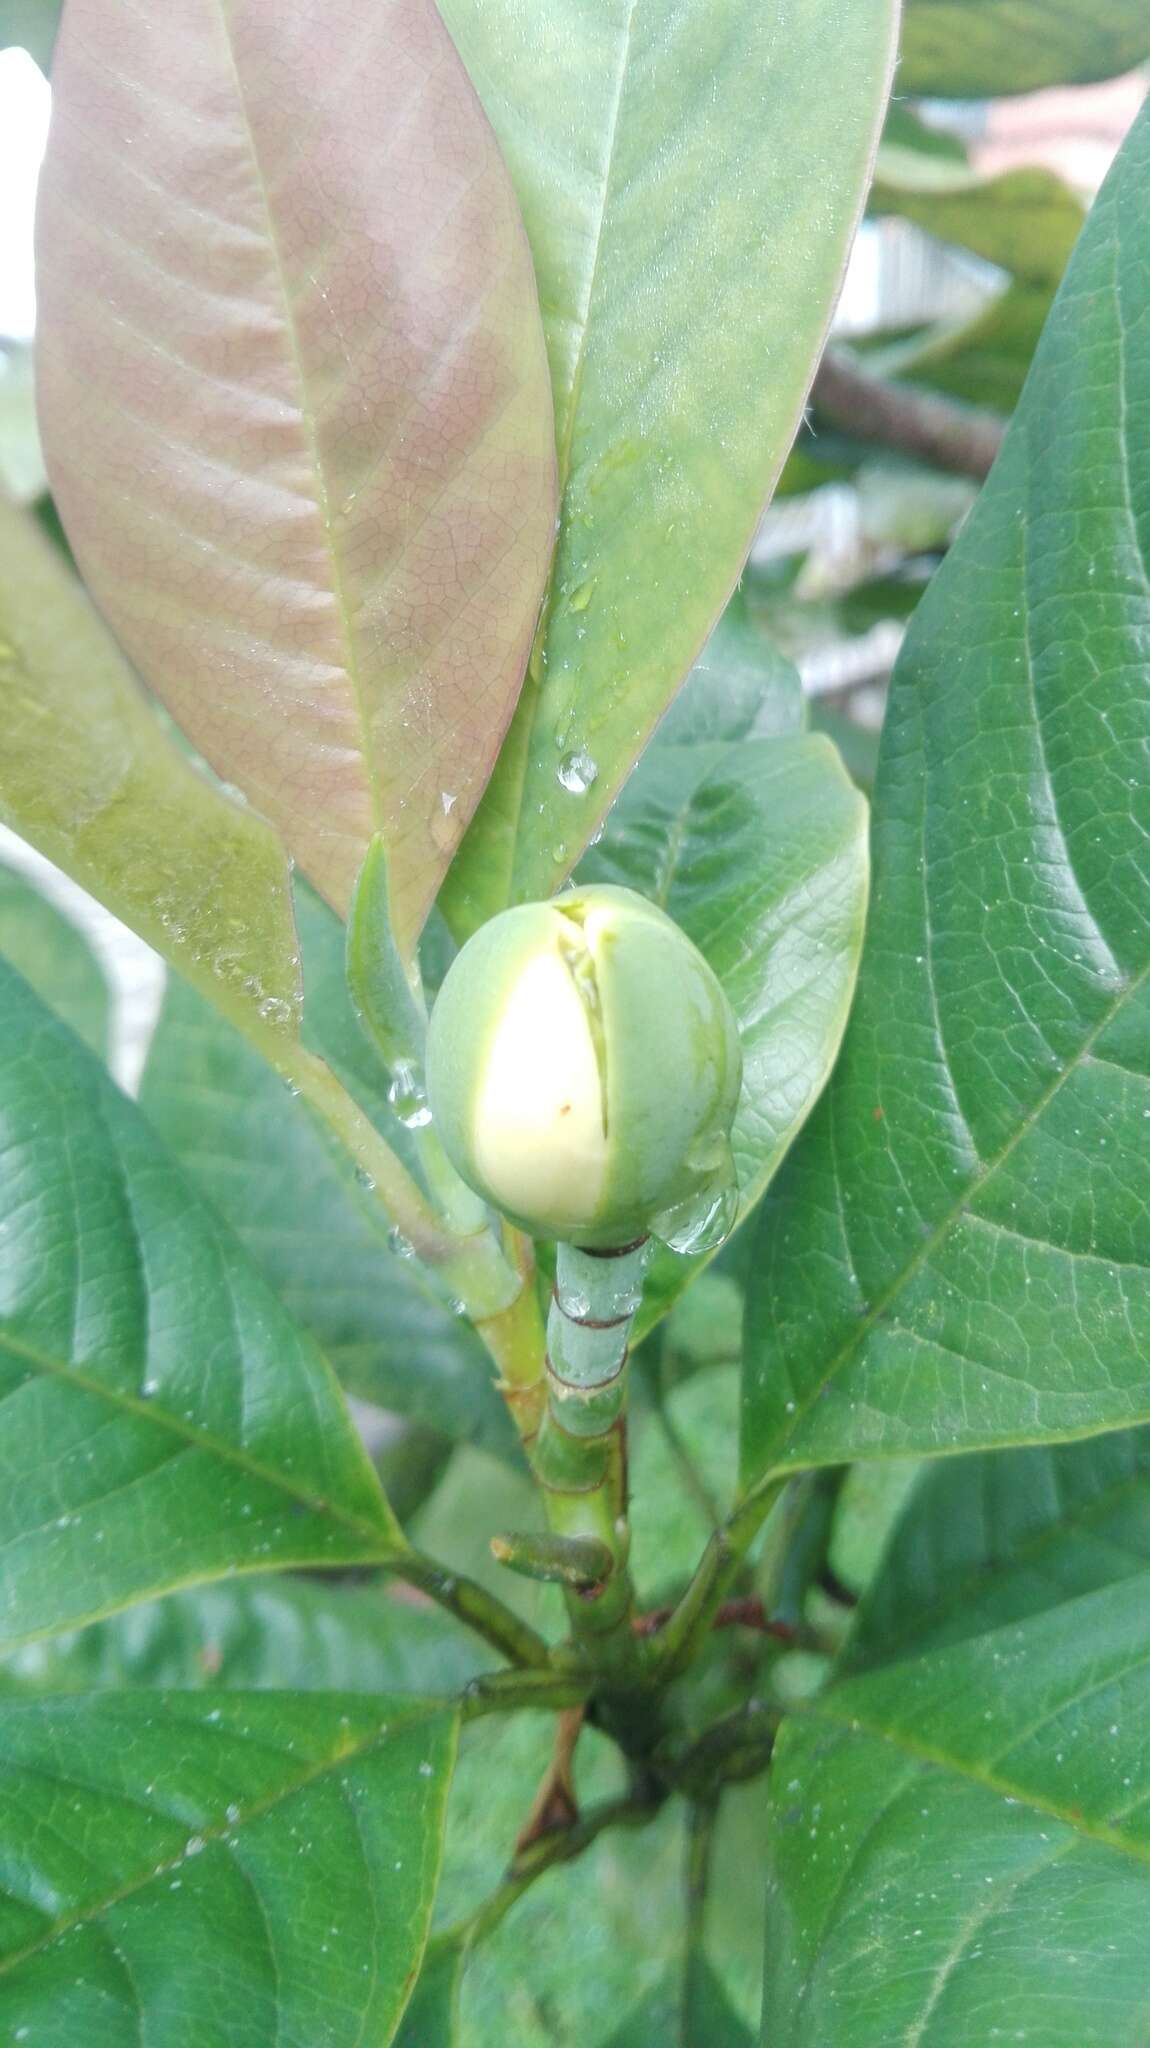 Magnolia gilbertoi (Lozano) Govaerts的圖片